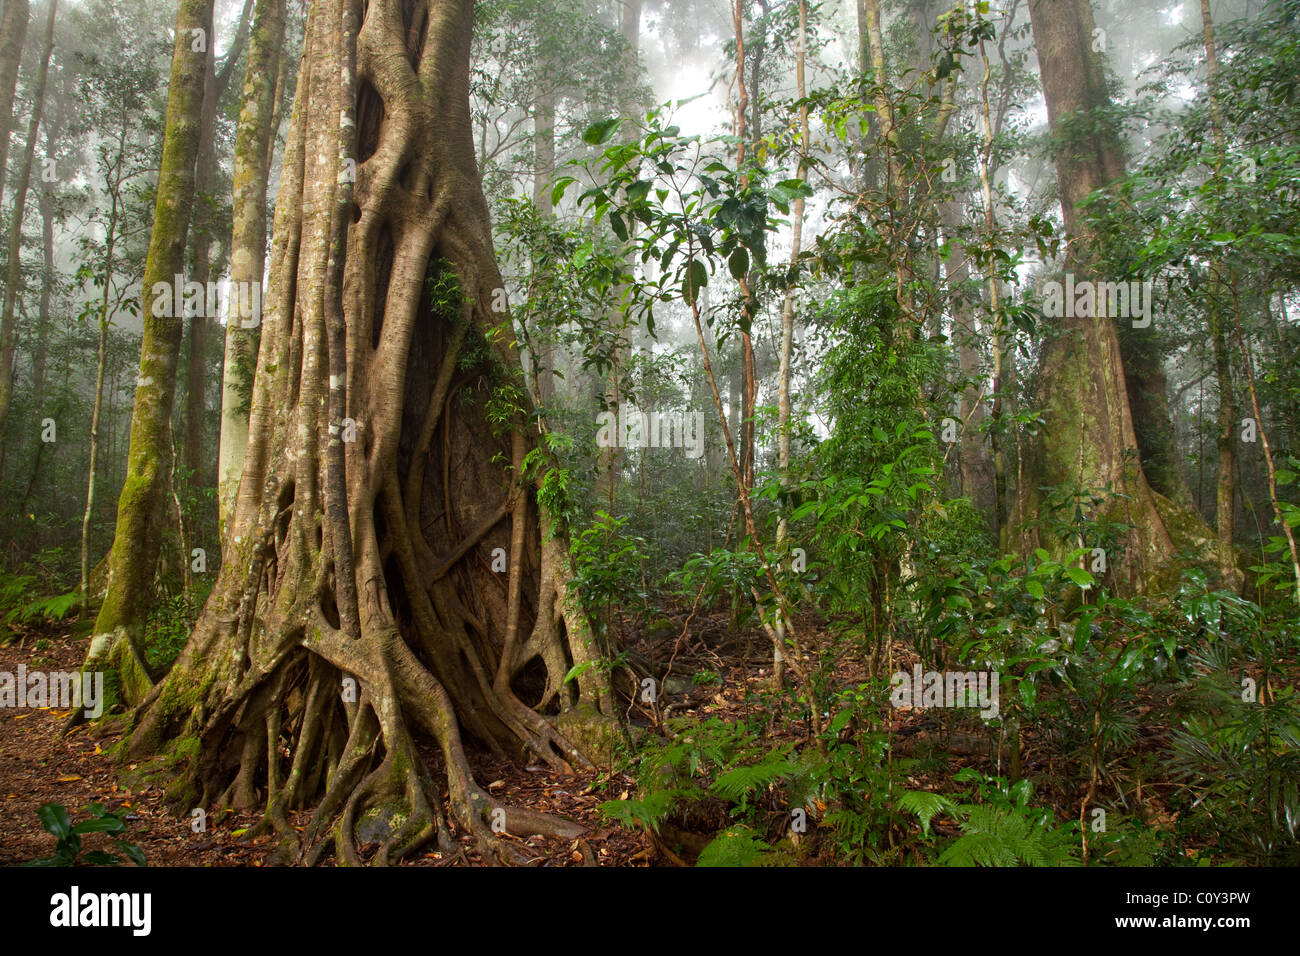 Binna Burra rainforest subtropicale, section, Parc National de Lamington, Queensland, Australie Banque D'Images